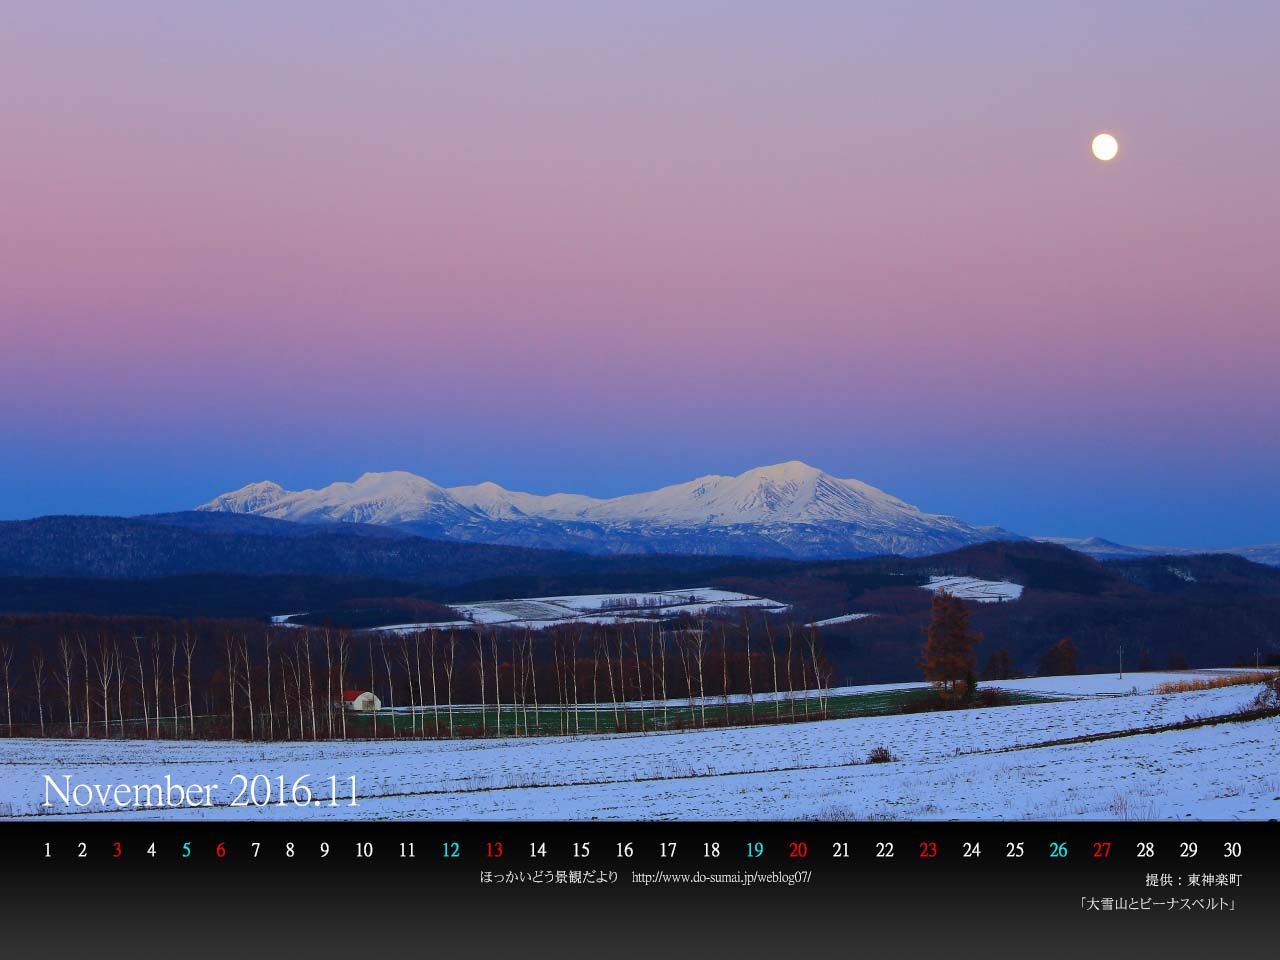 11月は大雪山 ｐｃ壁紙カレンダーを配布しています 北海道庁のブログ 超 旬ほっかいどう 楽天ブログ